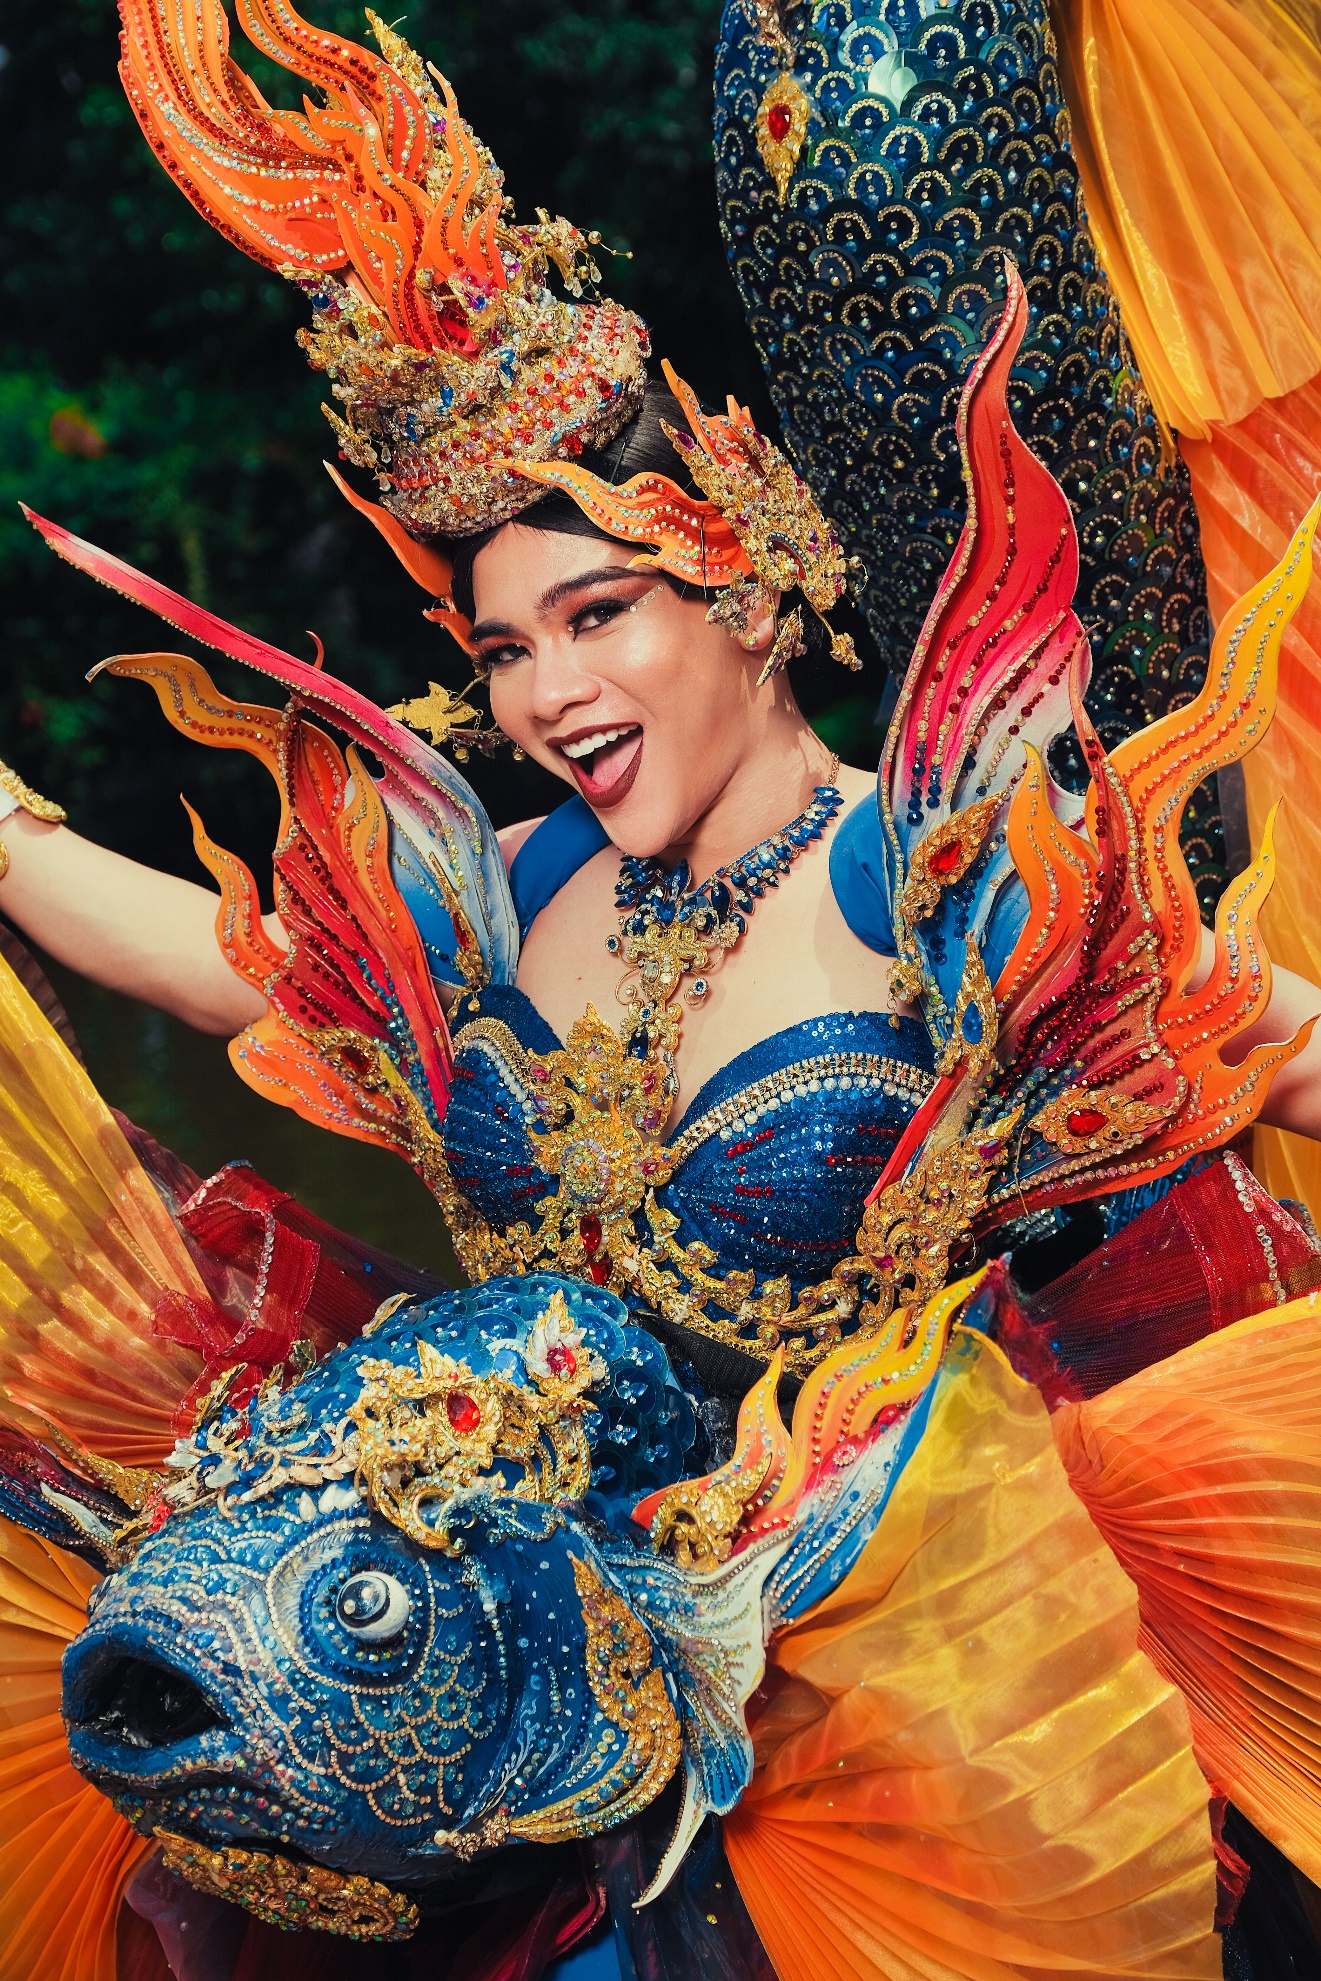 CEO Hương Nam Production House gây sốt cộng đồng mạng với bộ ảnh “National costume” Thái Lan - Ảnh 9.